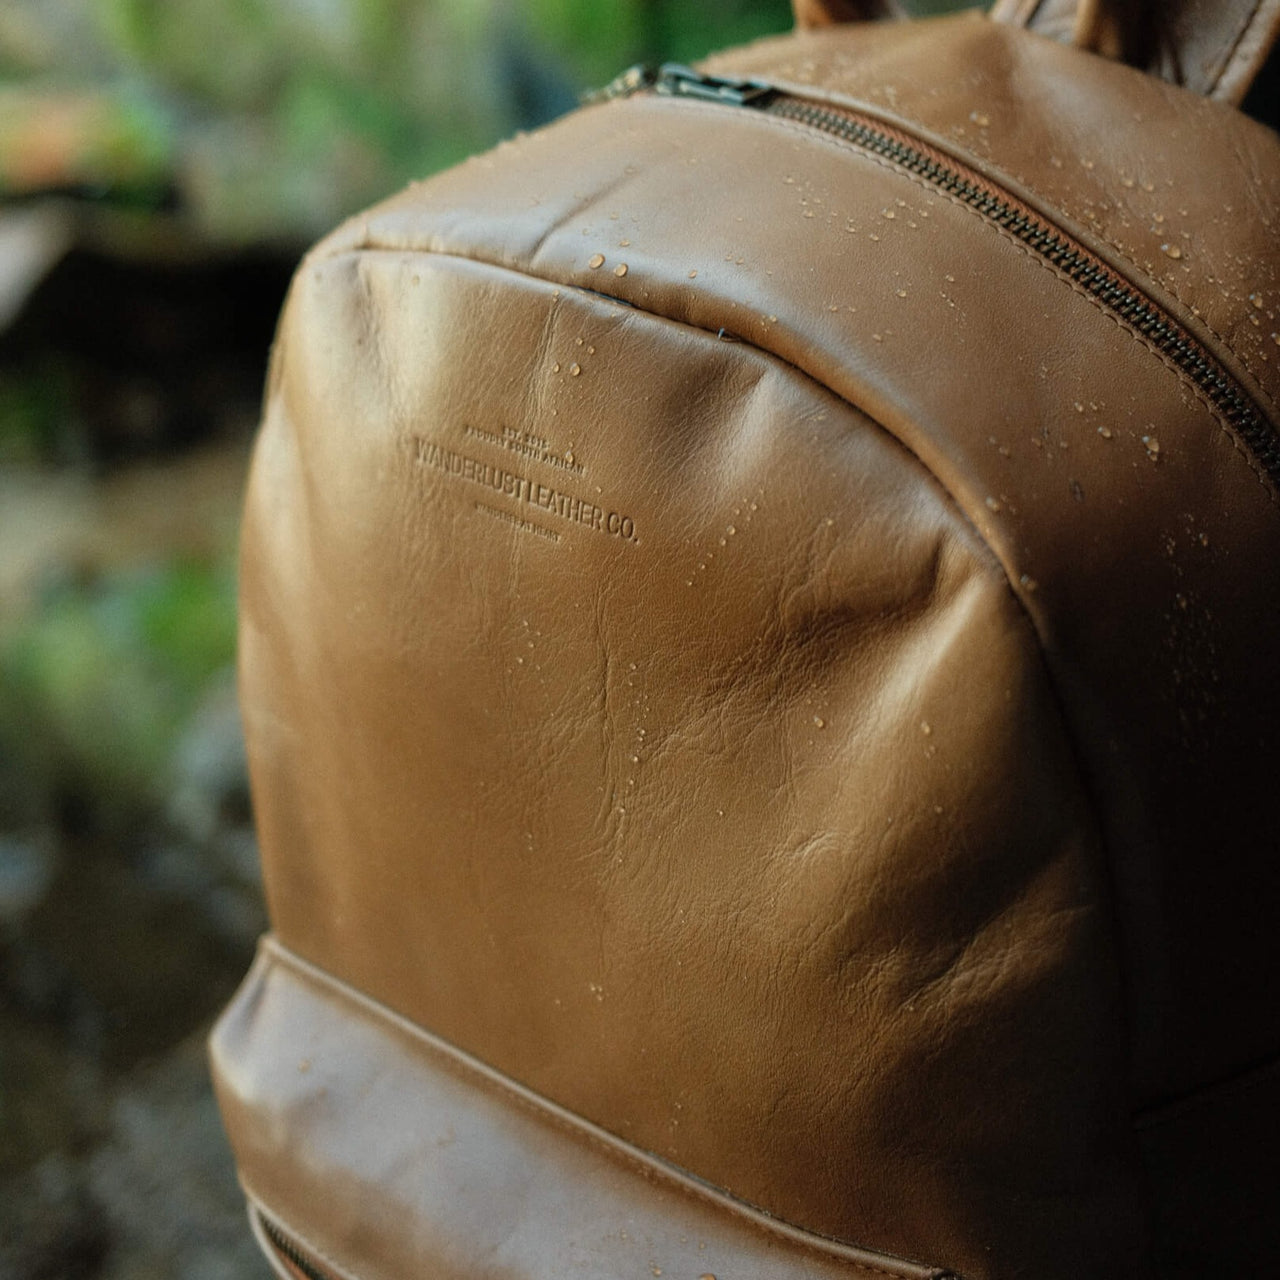 Wanderer Leather Backpack